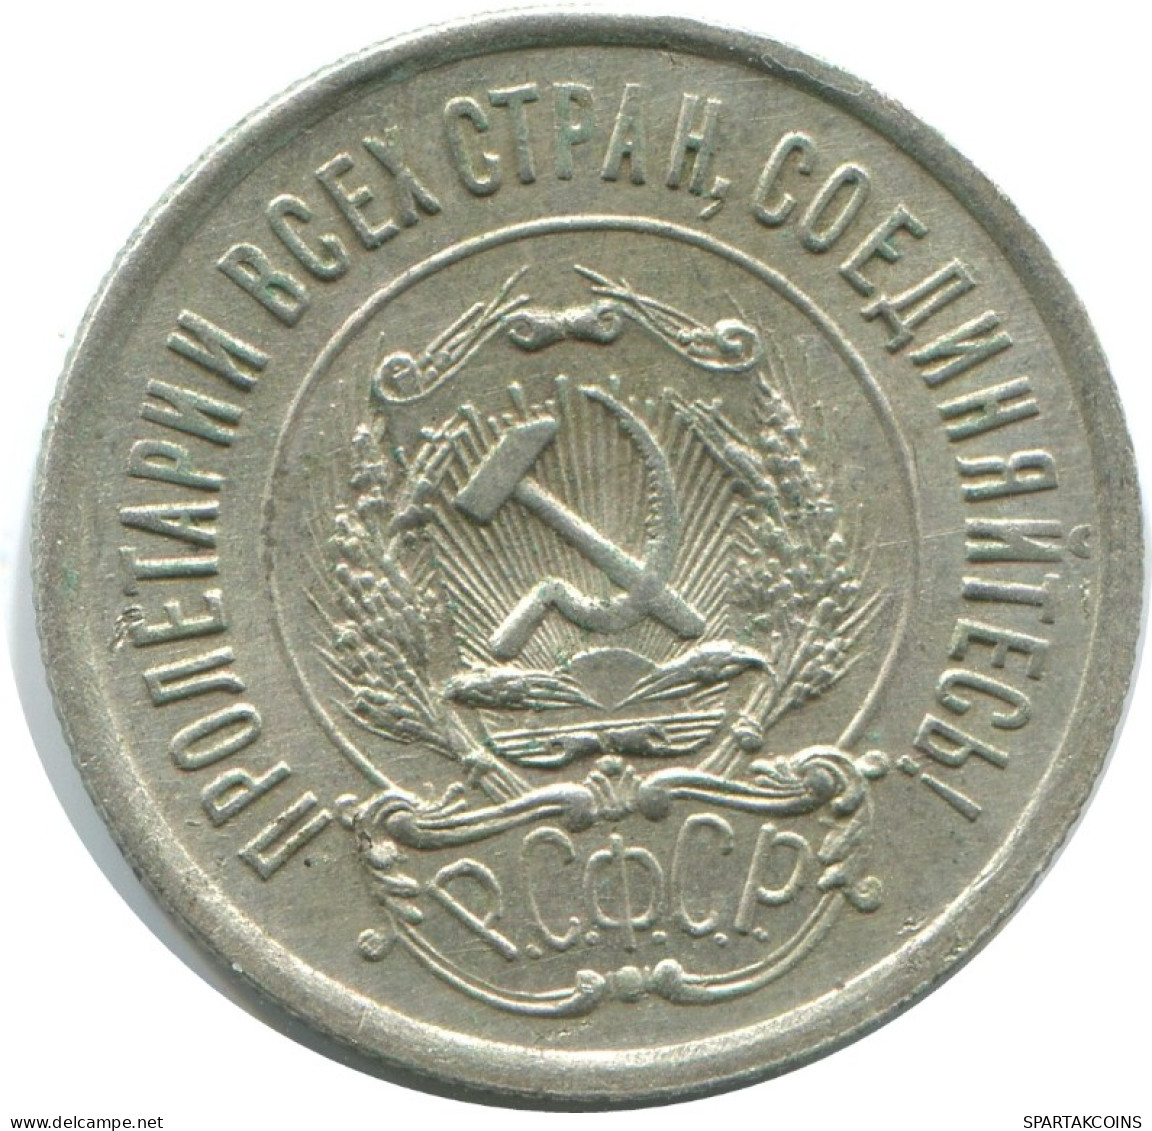 20 KOPEKS 1923 RUSSIA RSFSR SILVER Coin HIGH GRADE #AF508.4.U.A - Russland